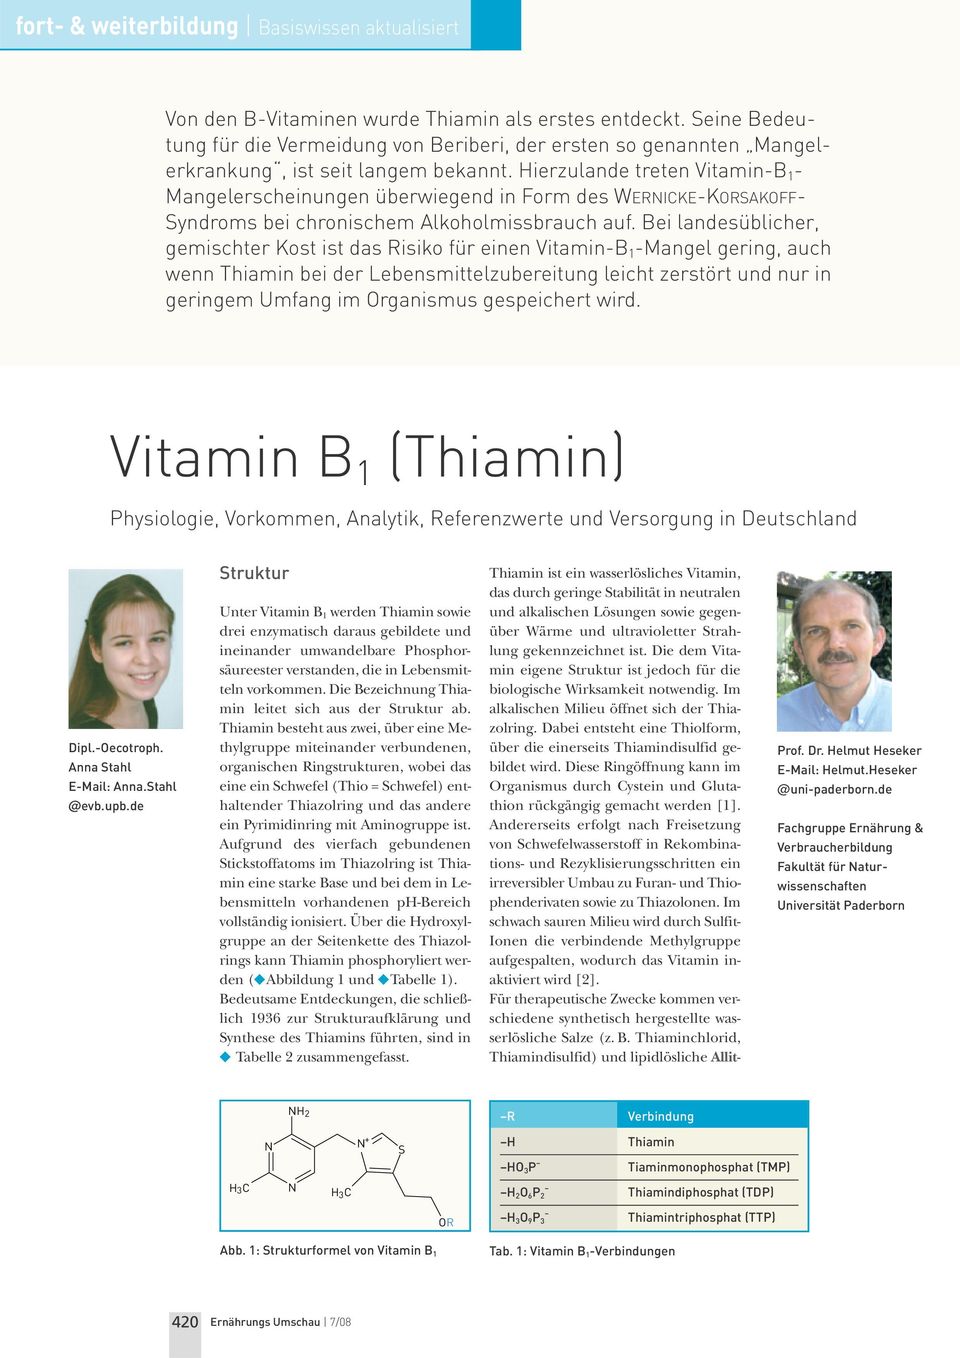 Bei landesüblicher, gemischter Kost ist das Risiko für einen Vitamin-B 1 -Mangel gering, auch wenn Thiamin bei der Lebensmittelzubereitung leicht zerstört und nur in geringem Umfang im Organismus